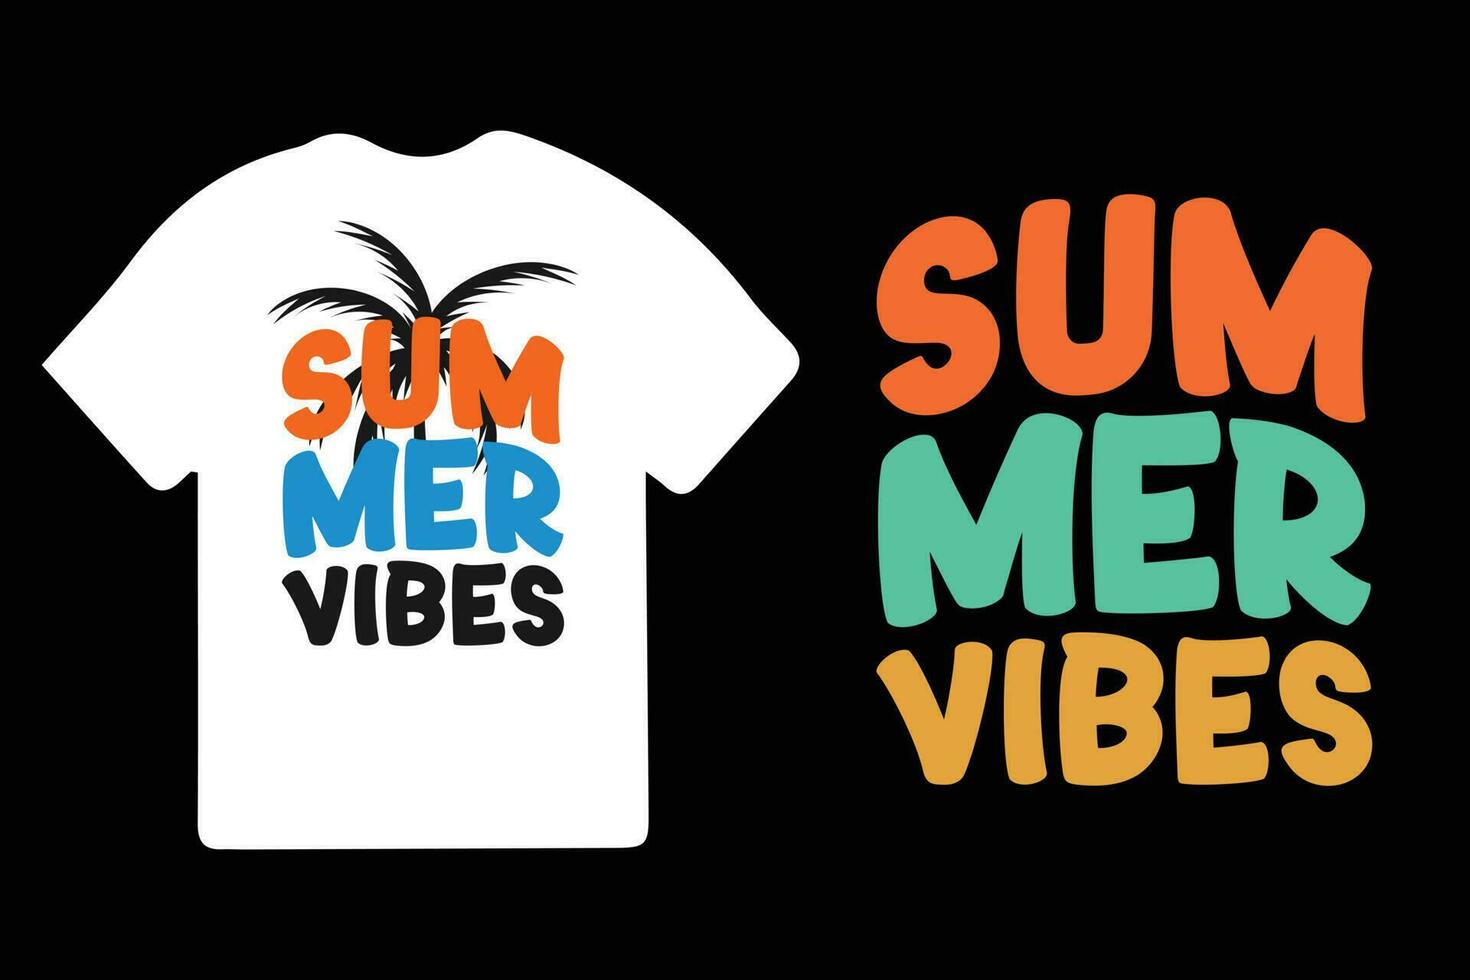 verano camiseta diseño, verano paraíso, verano playa vacaciones camisetas, verano surf camiseta vector diseño, verano camiseta vector.